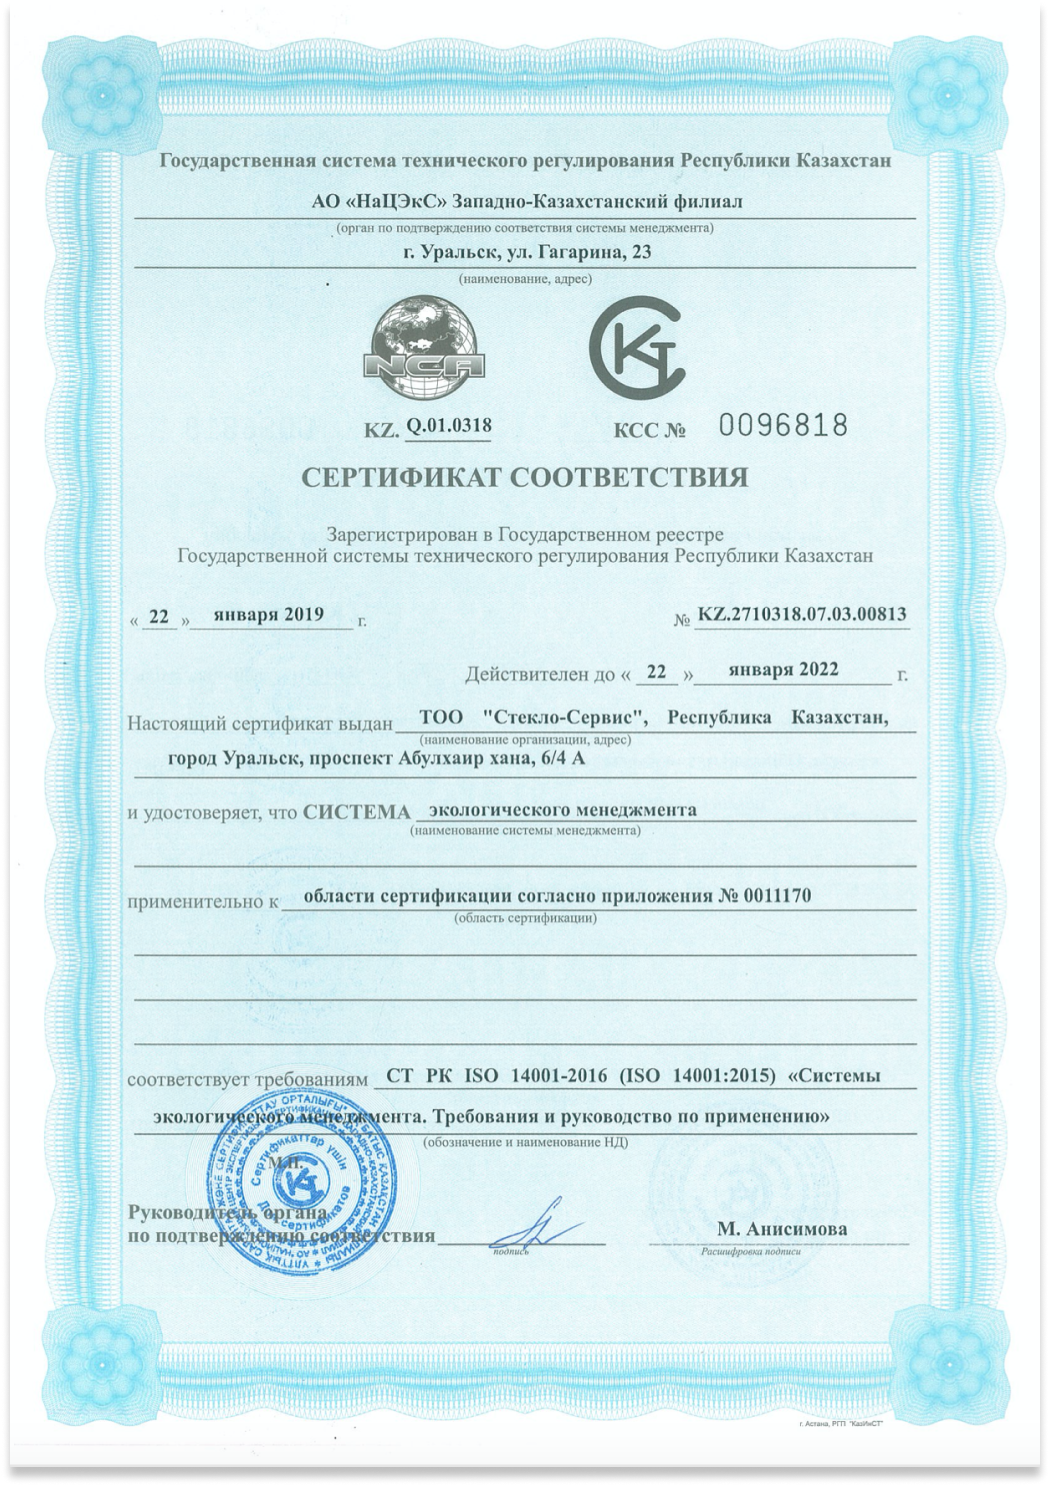 СТ РК ISO 14001-2016 / ISO 14001-2015